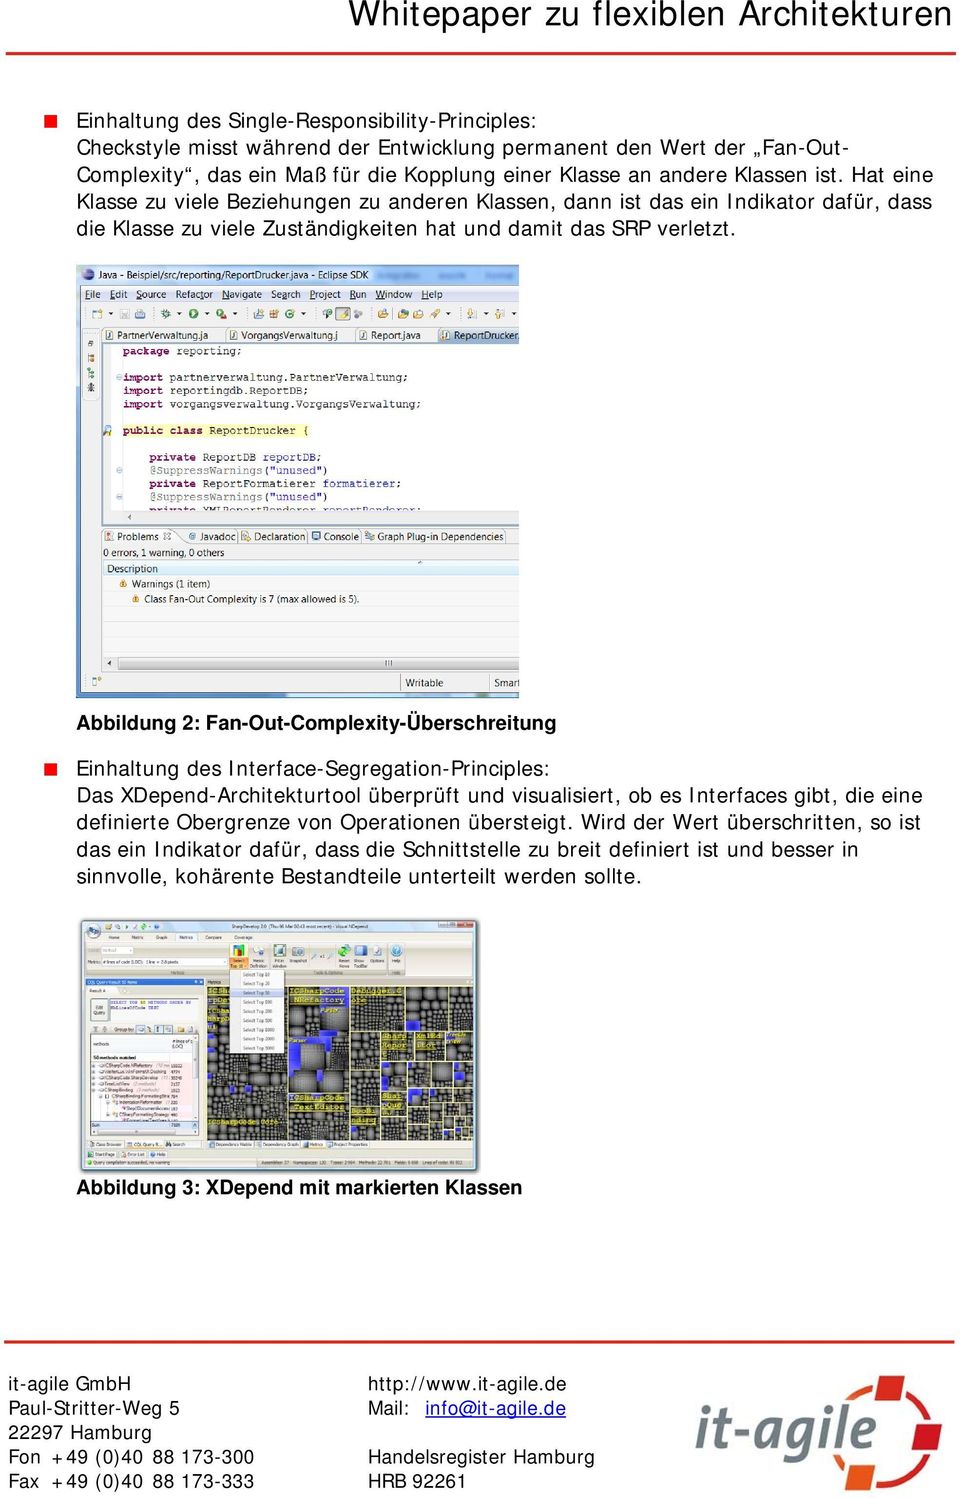 Abbildung 2: Fan-Out-Complexity-Überschreitung Einhaltung des Interface-Segregation-Principles: Das XDepend-Architekturtool überprüft und visualisiert, ob es Interfaces gibt, die eine definierte